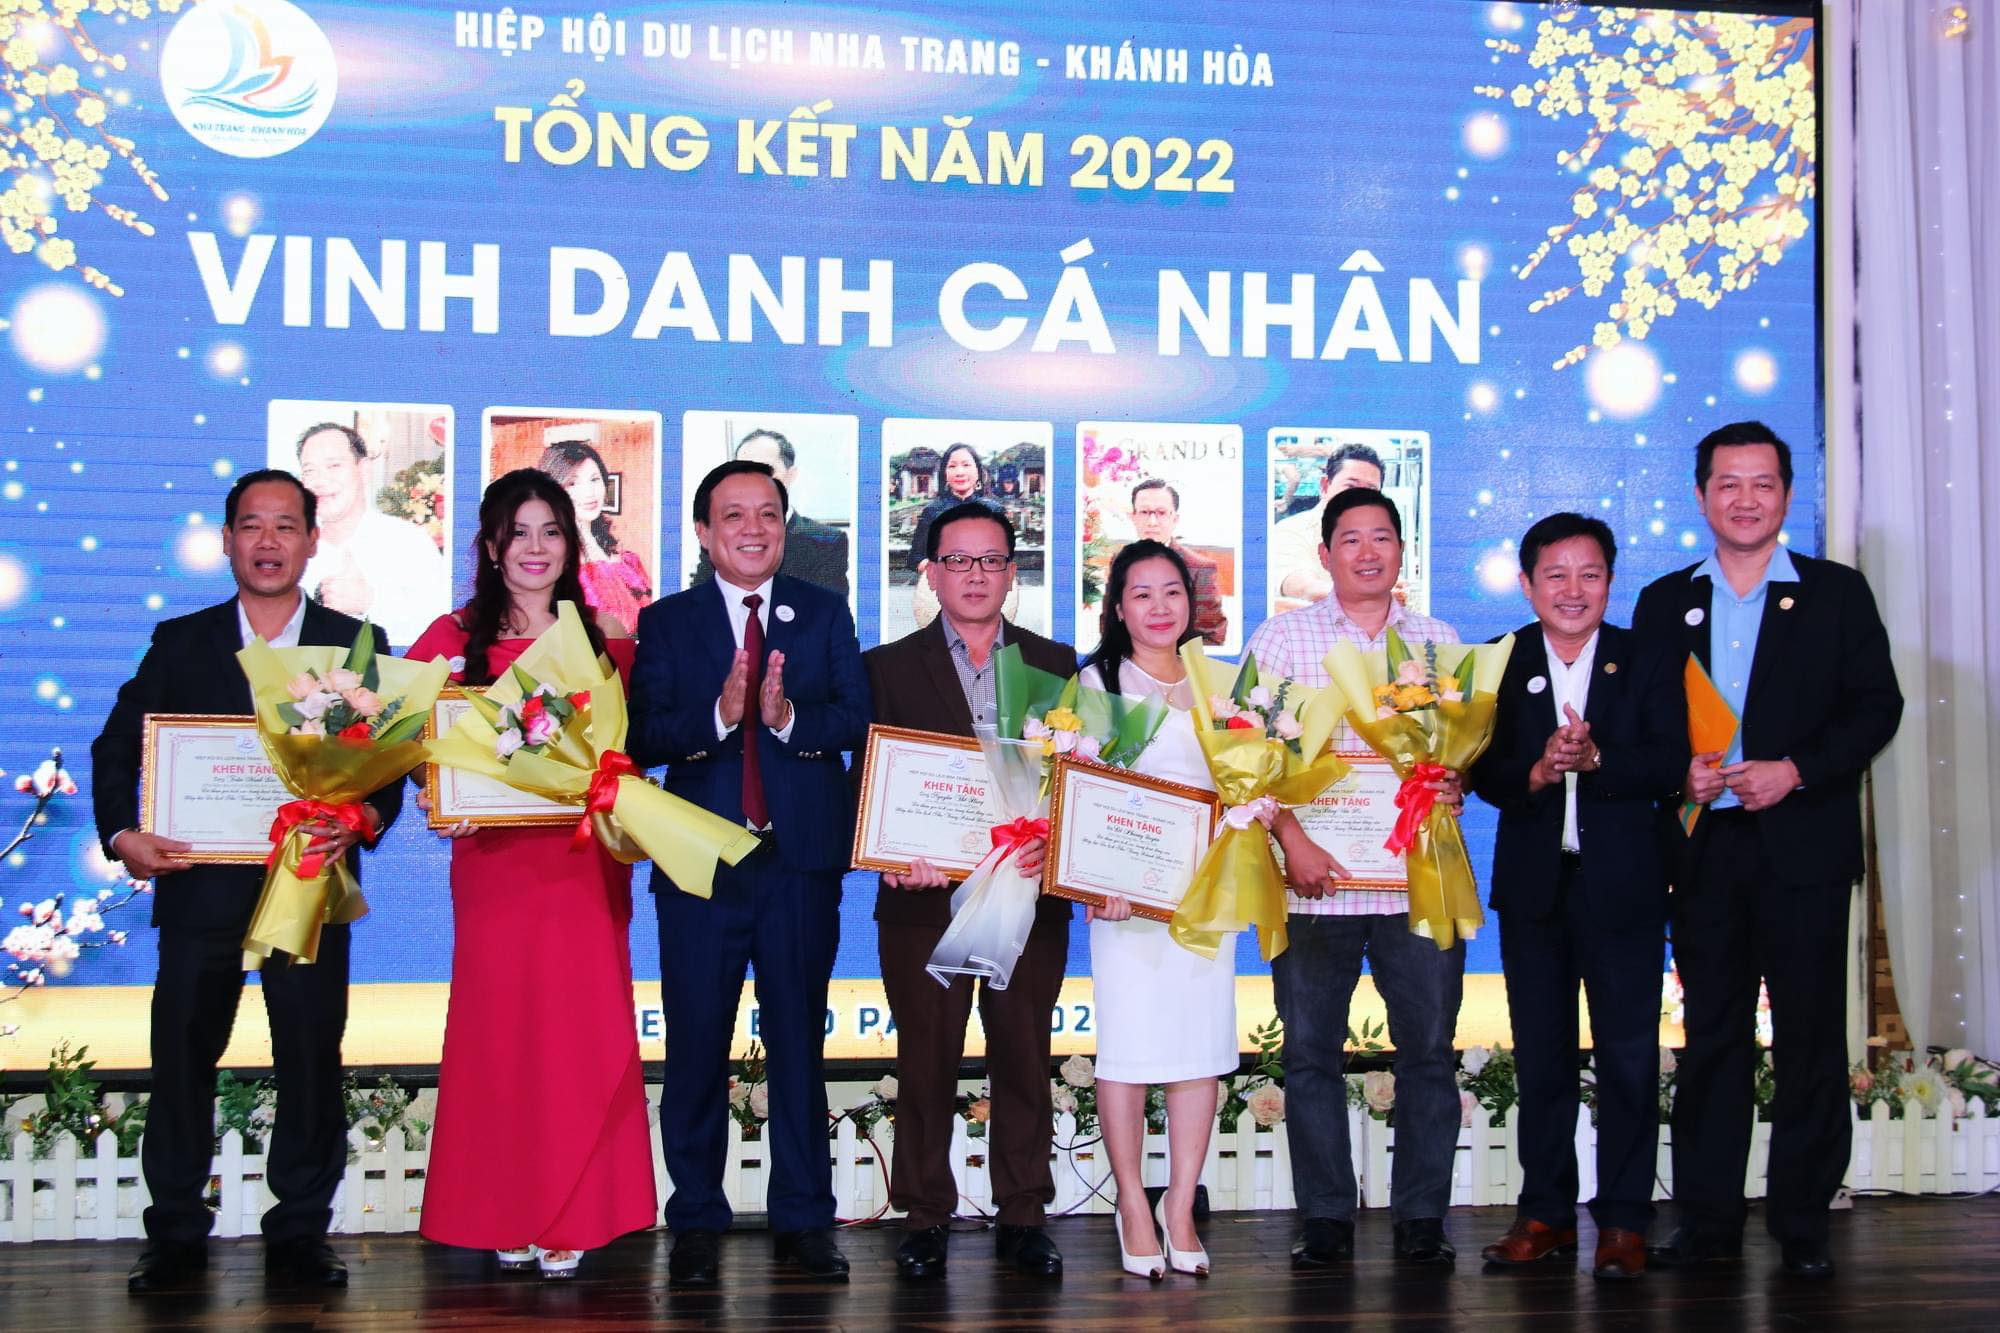 Lãnh đạo HHDL Nha Trang - Khánh Hòa trao thưởng cho các cá nhân có thành tích xuất sắc trong năm 2022